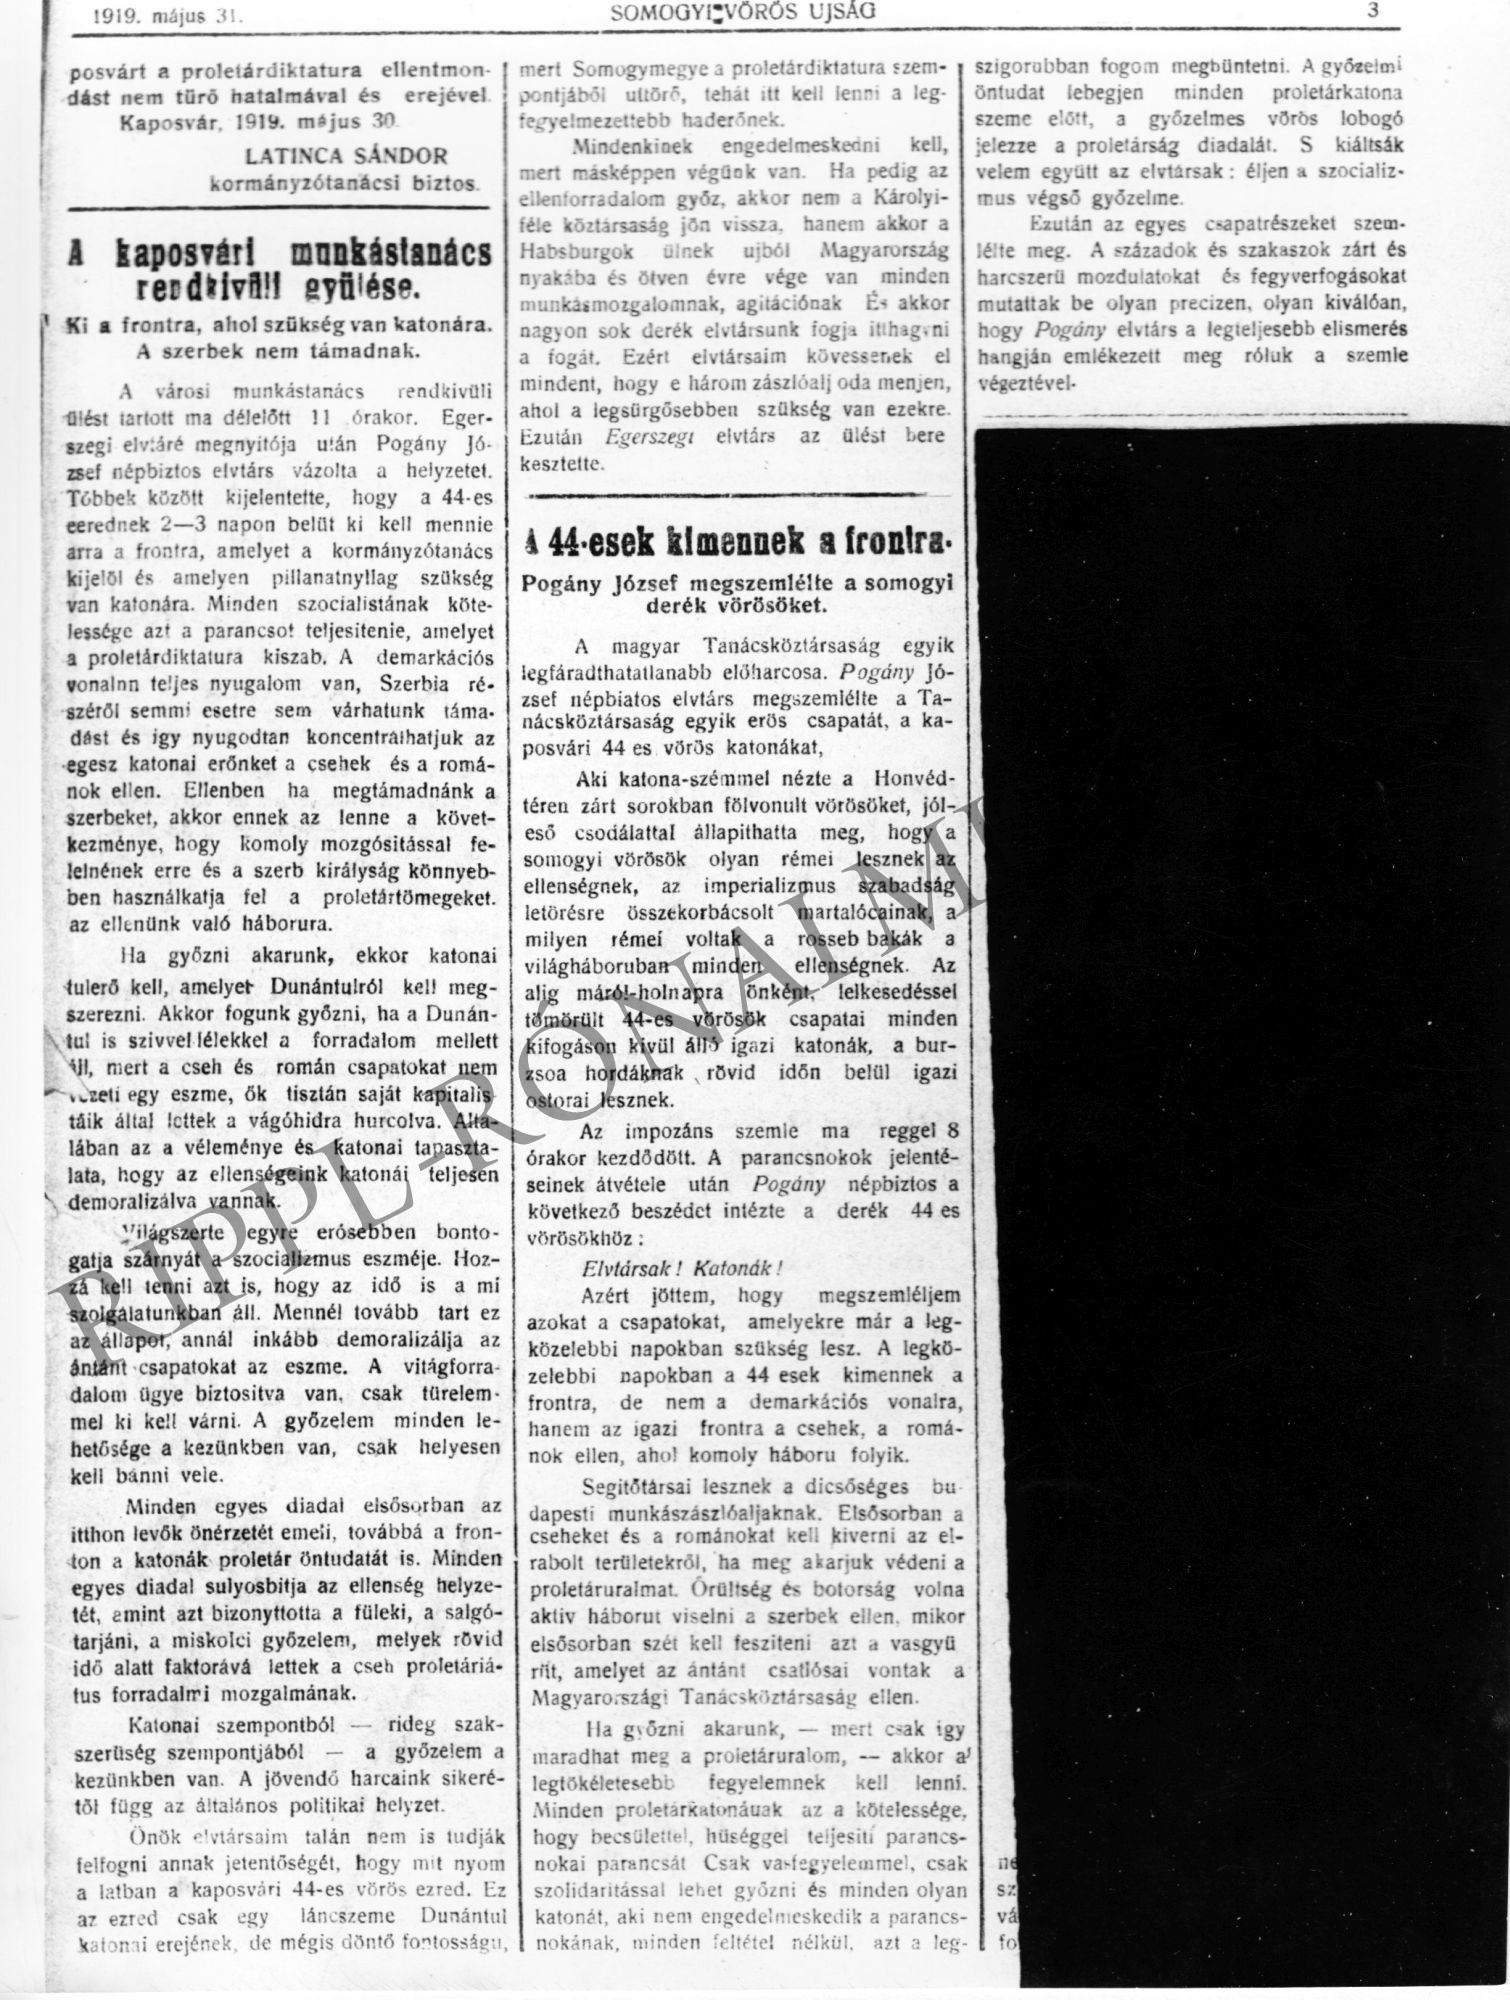 Somogyi Vörös Ujság. 1919. május 31. "A kaposvári munkástanács rendkívüli gyűlése." és "A 44-esek kimennek a frontra" cikkekkel (Rippl-Rónai Múzeum CC BY-NC-SA)